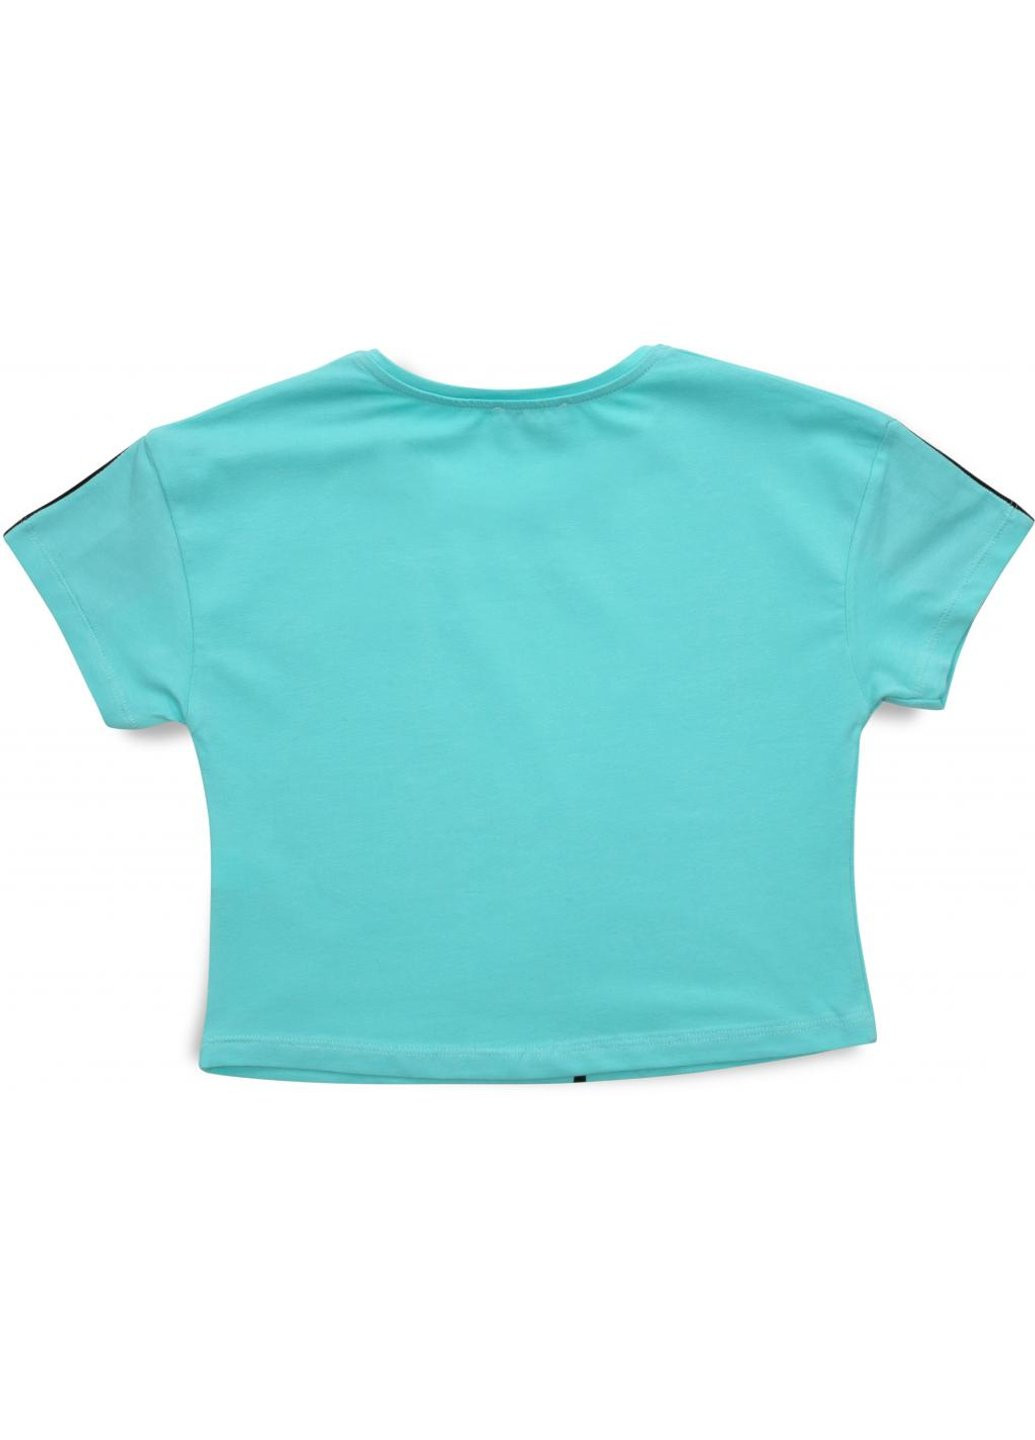 Комбинированная футболка детская с мишкой (3023-152g-green) Matilda